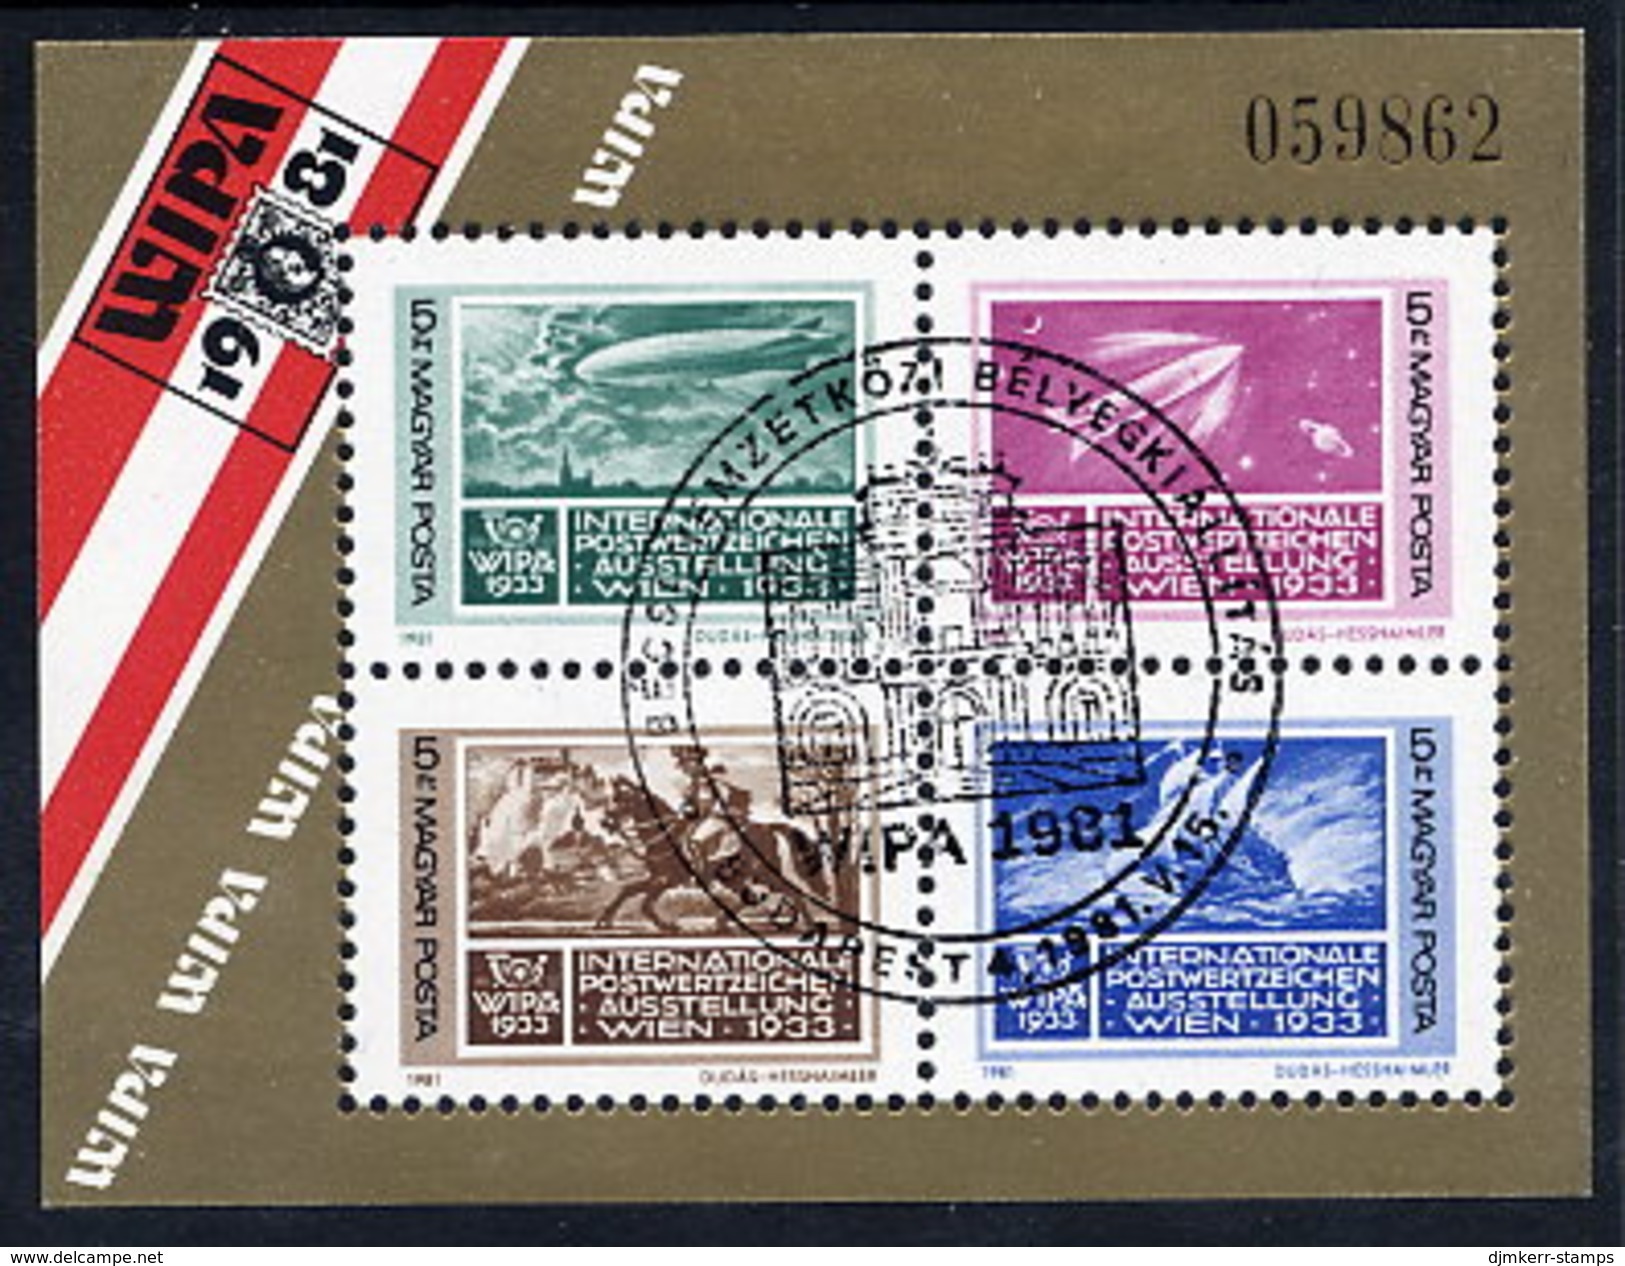 HUNGARY 1981 WIPA Stamp Exhibition Block Used.  Michel Block 150 - Gebruikt